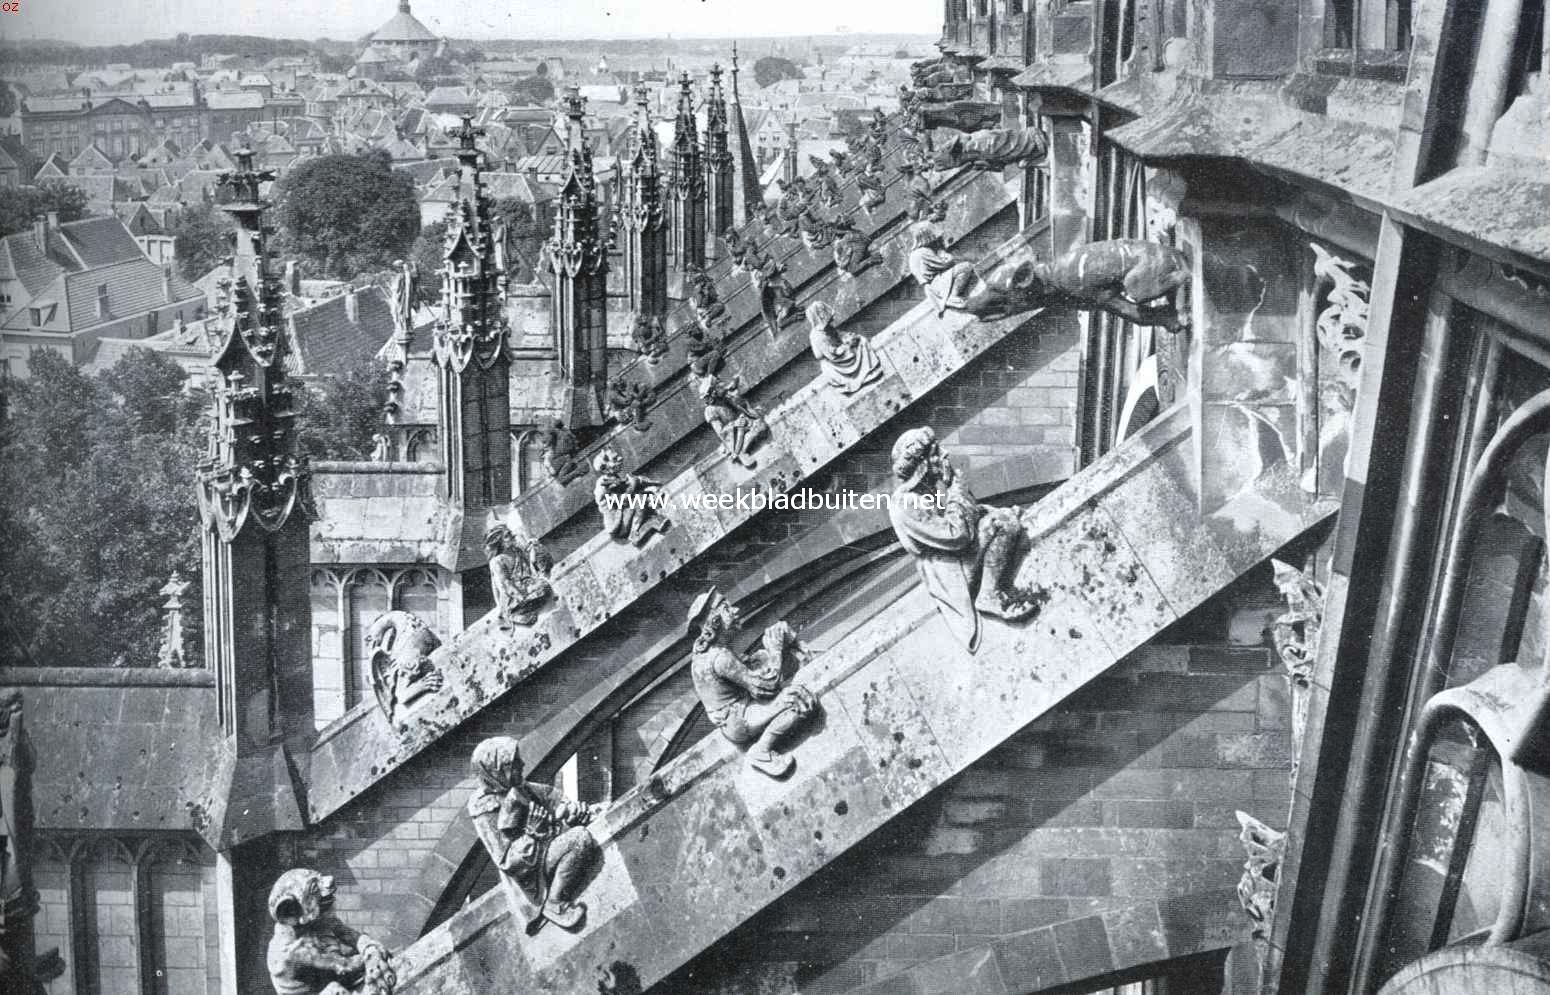 's-Hertogenbosch zevenhonderdvijftig jaar. De luchtbogen met hun typische beelden aan de zuidzijde der 'St. Janskathedraal